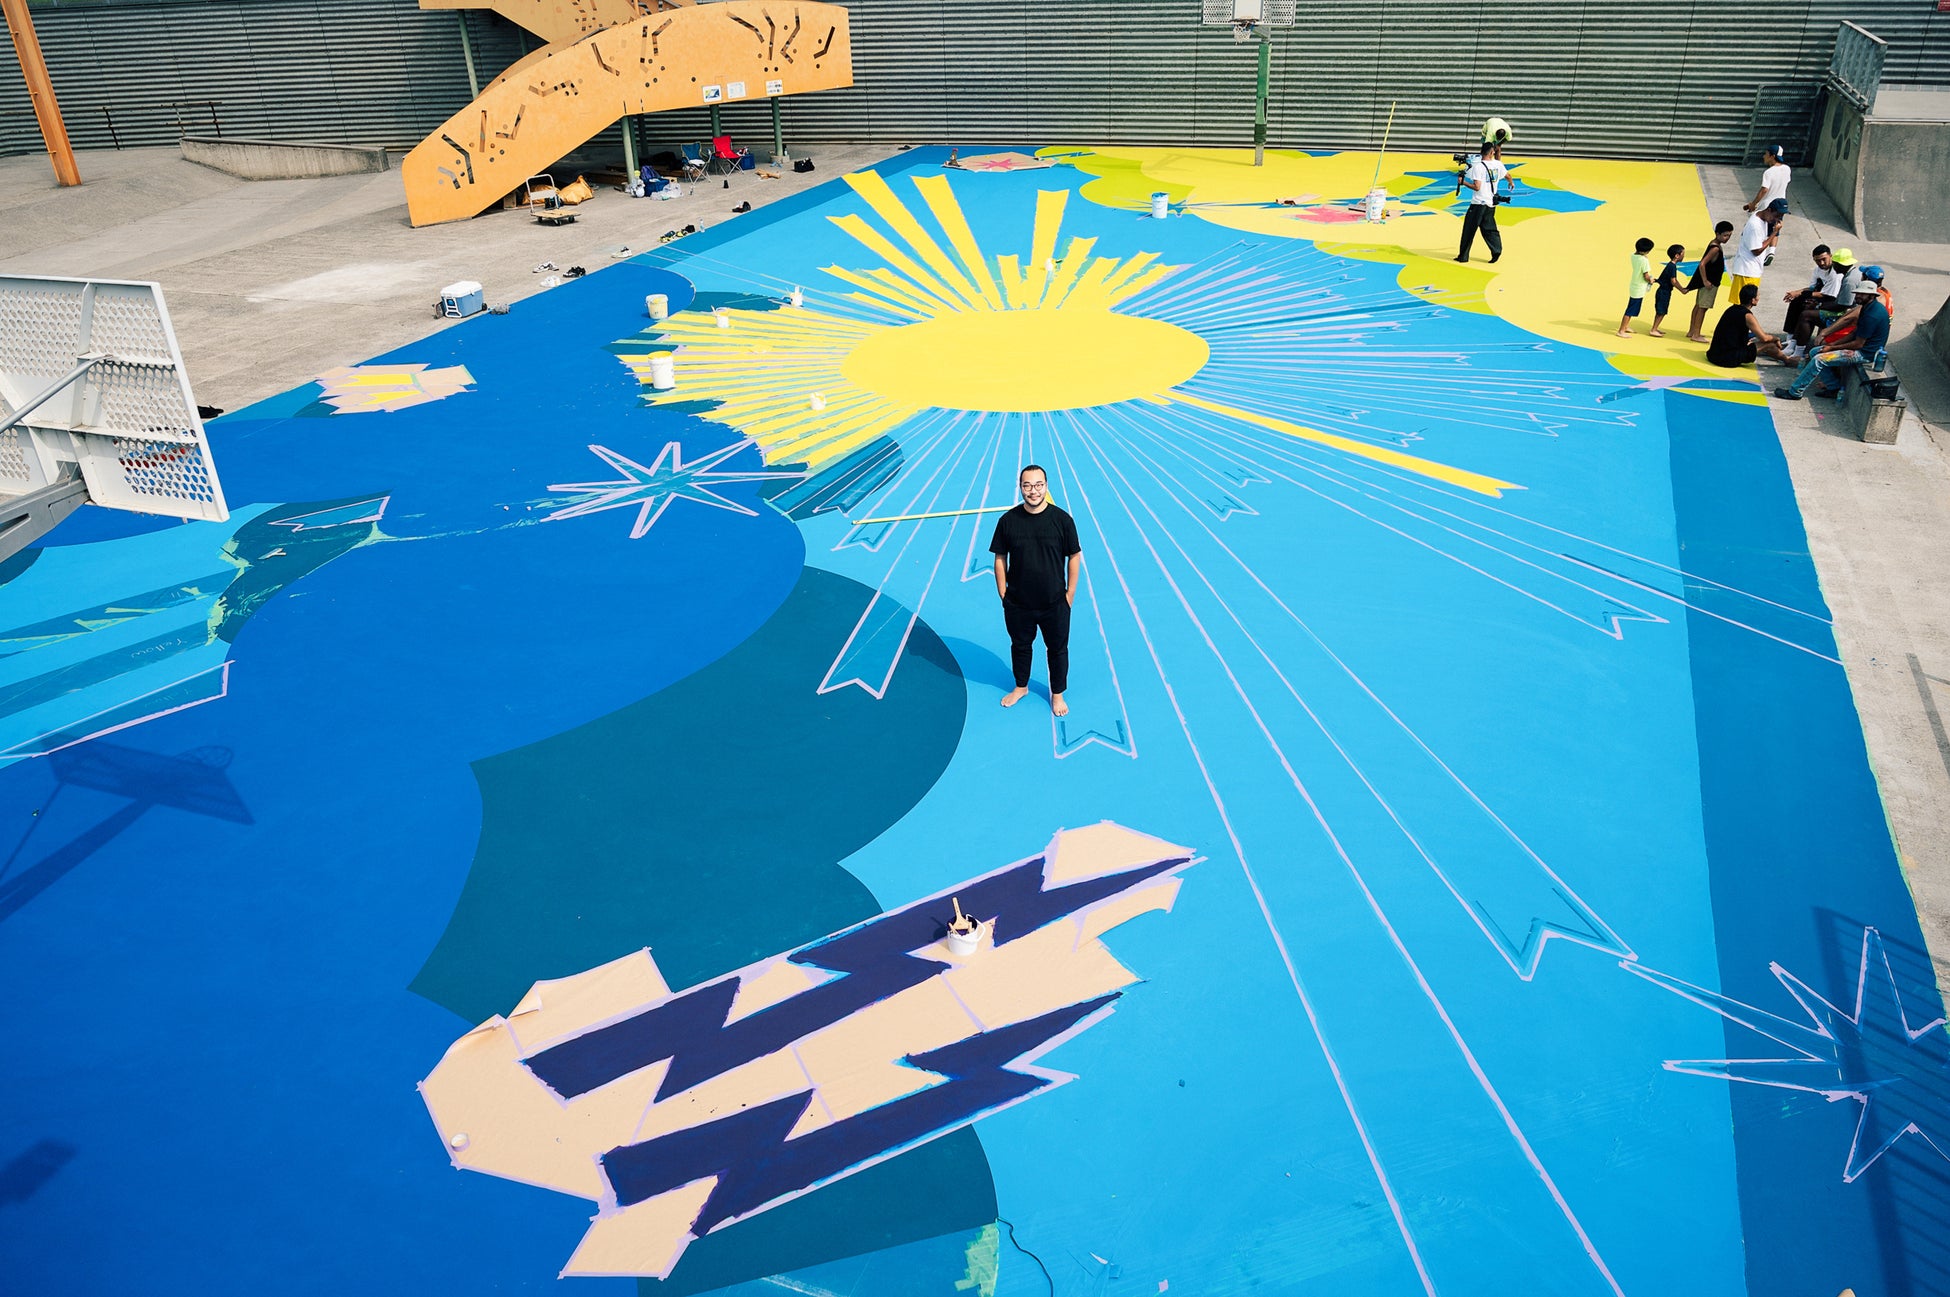 アーティスト舘鼻則孝のアートワークで彩られたバスケットボールコート。「PROJECT BACKBOARD 」&「 go parkey」によるリノベーション・アートコートが完成される。